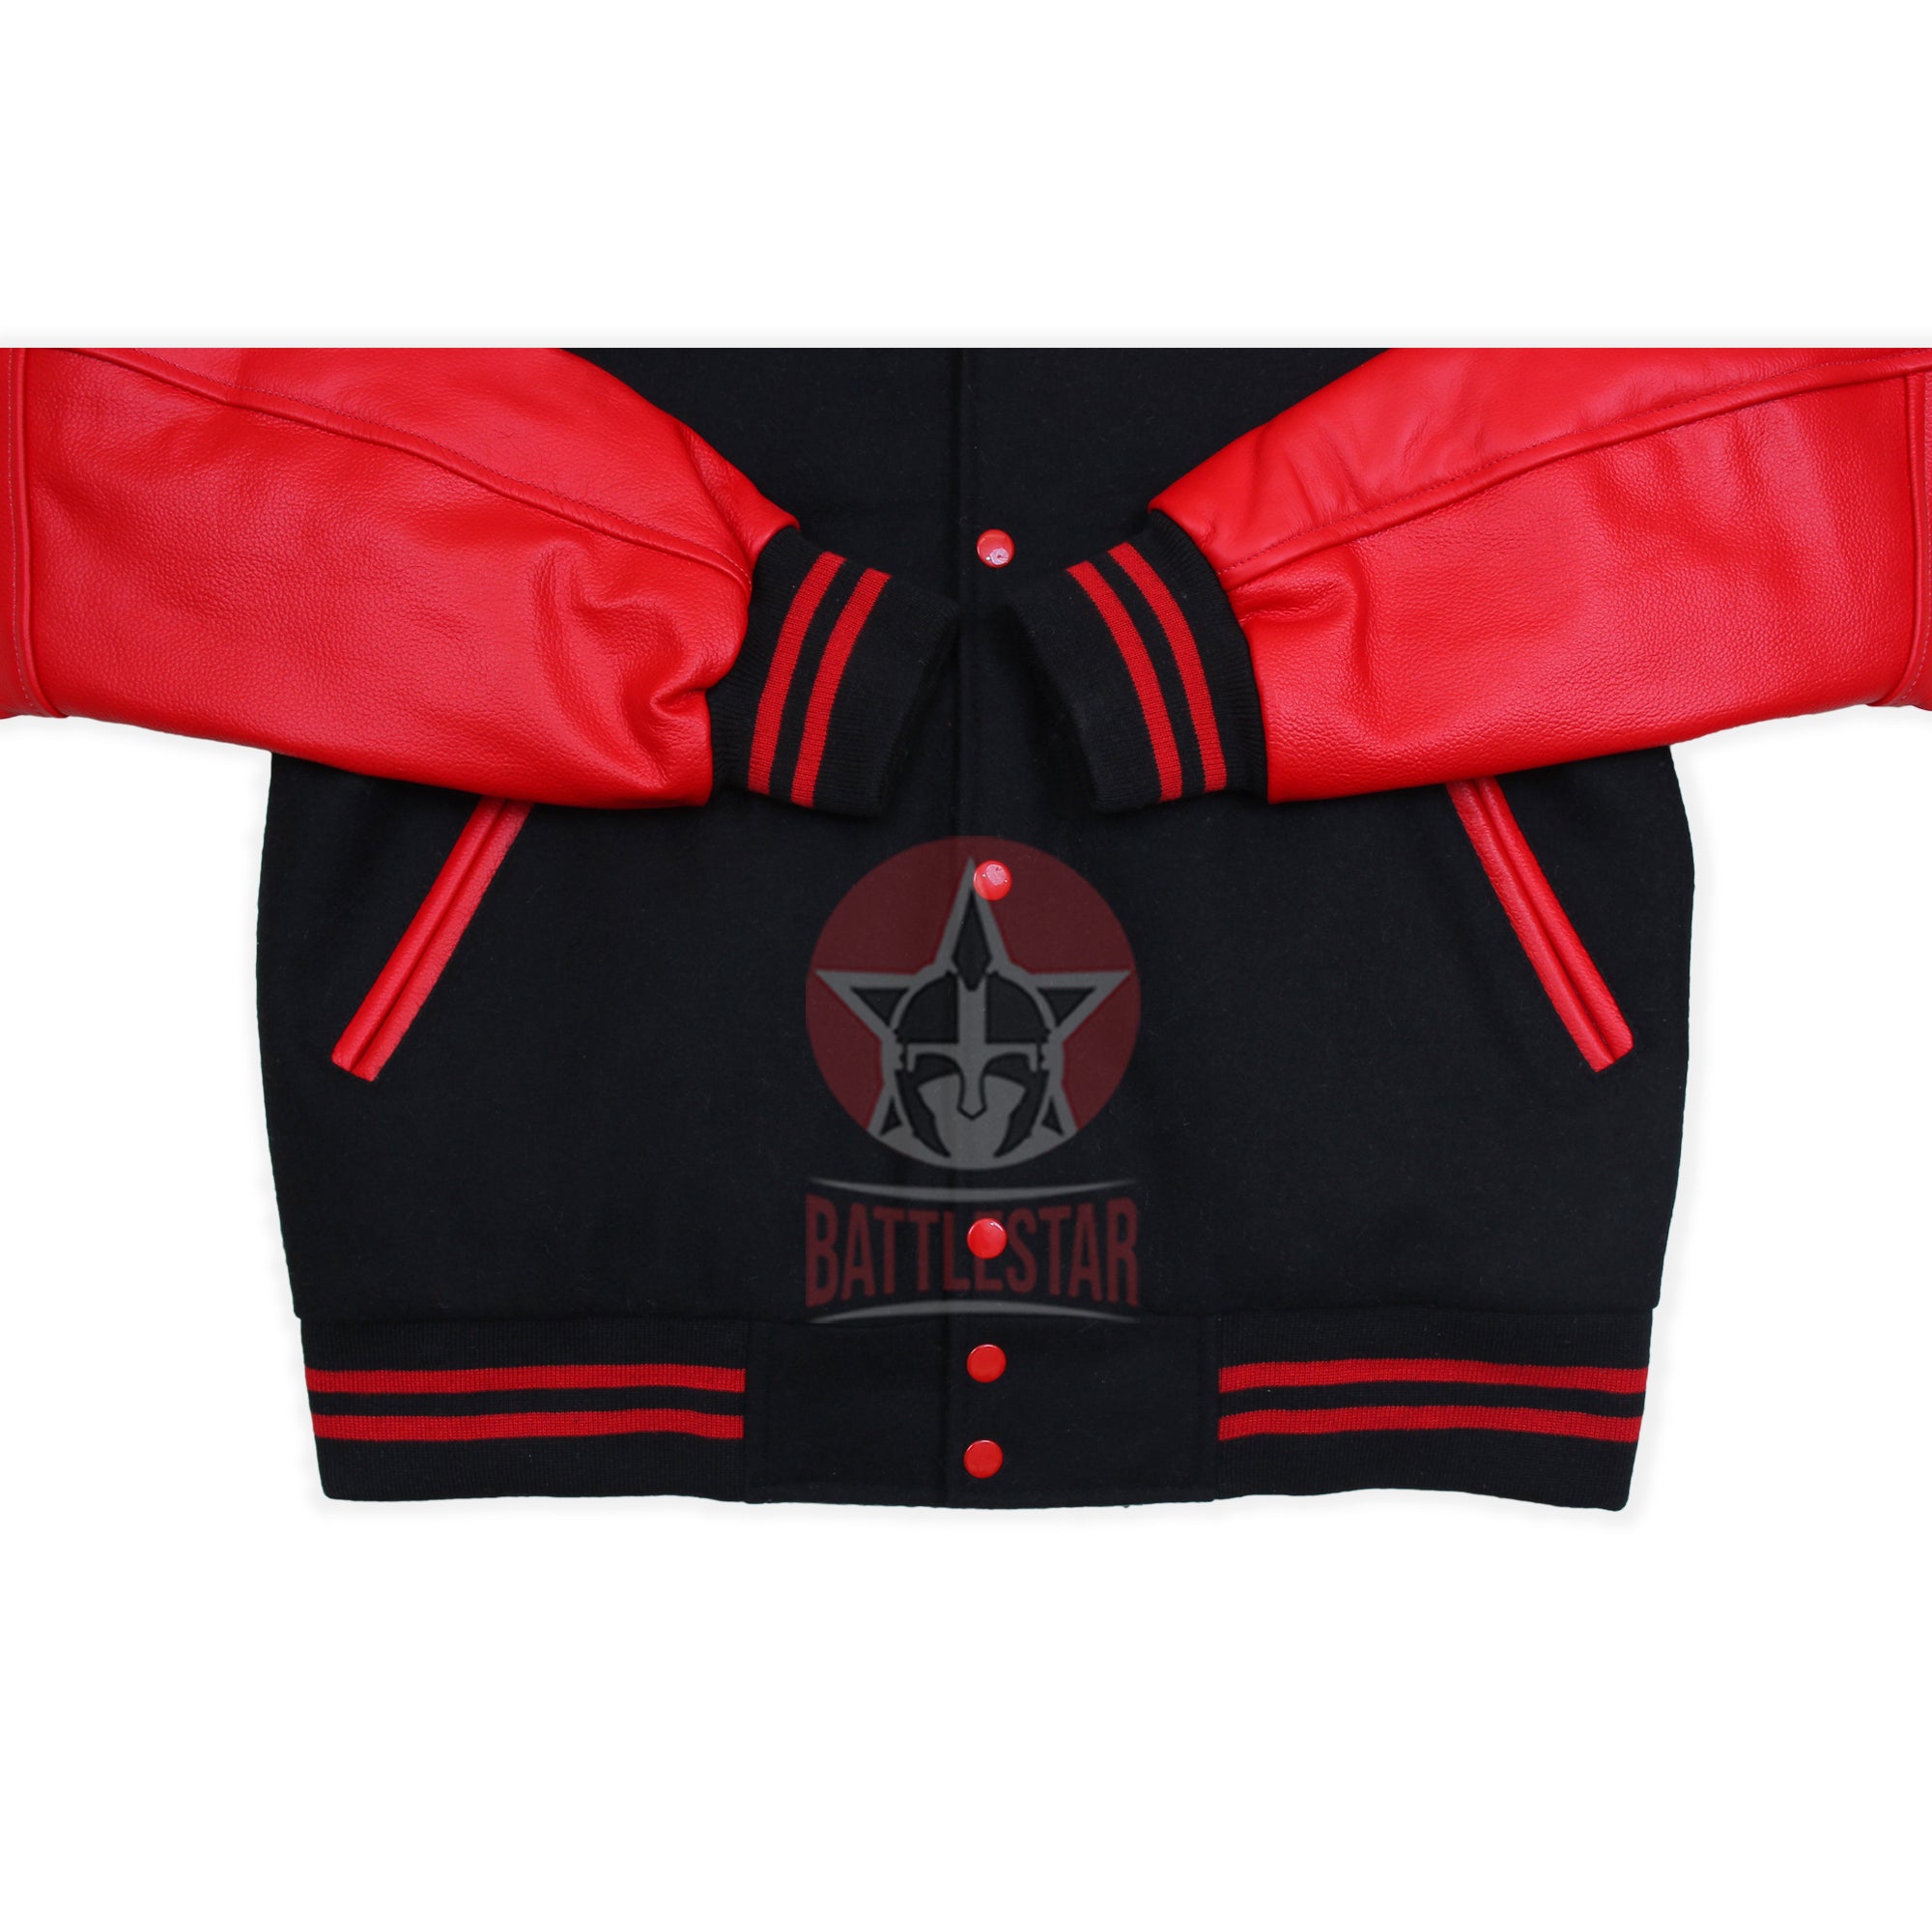 Black Wool Hooded Varsity Jacket Red Leather Sleeves